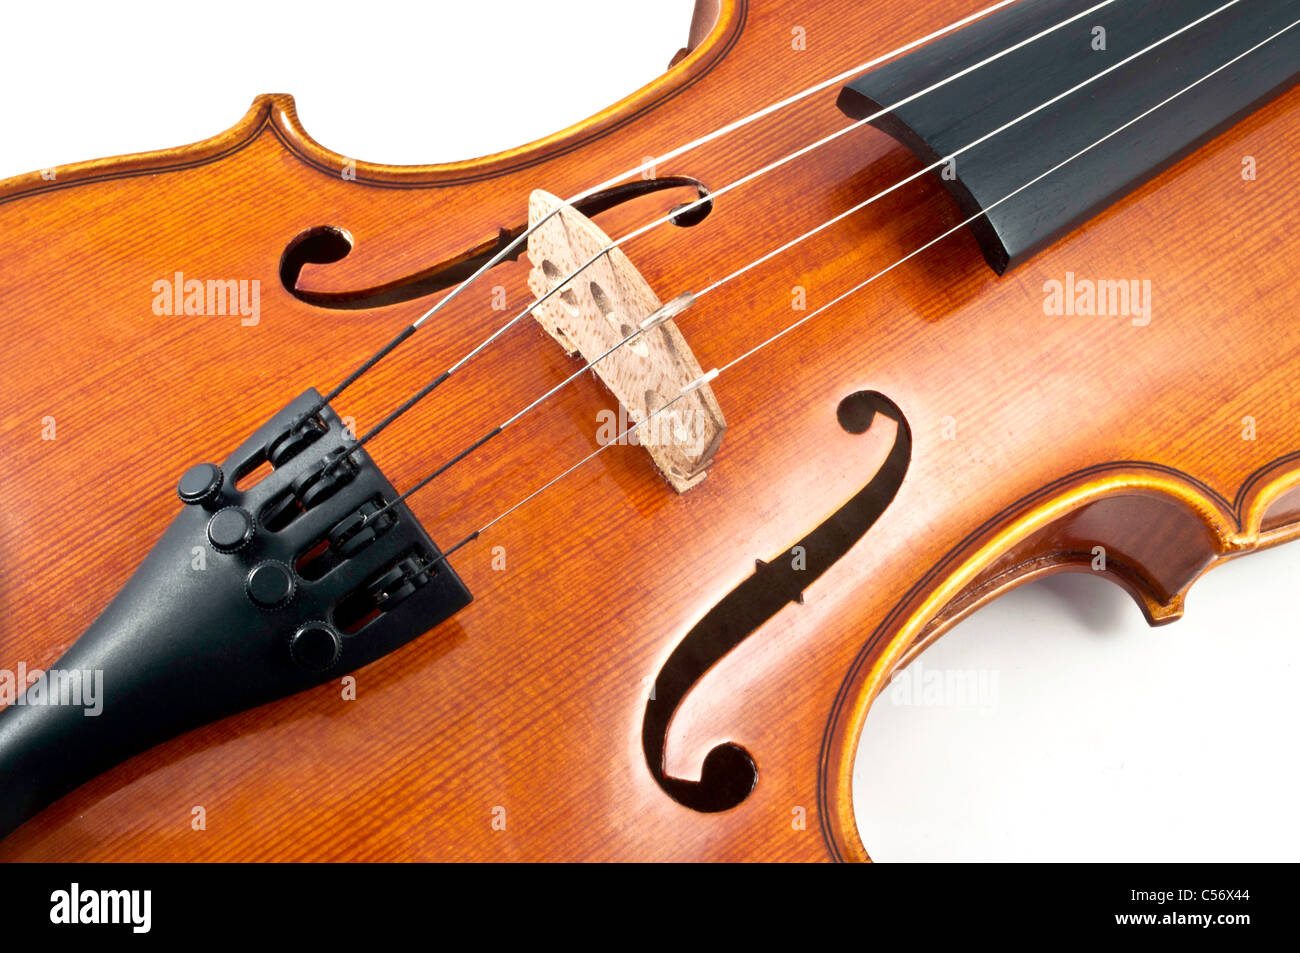 En bois italien détails corde de violon sur fond blanc Banque D'Images